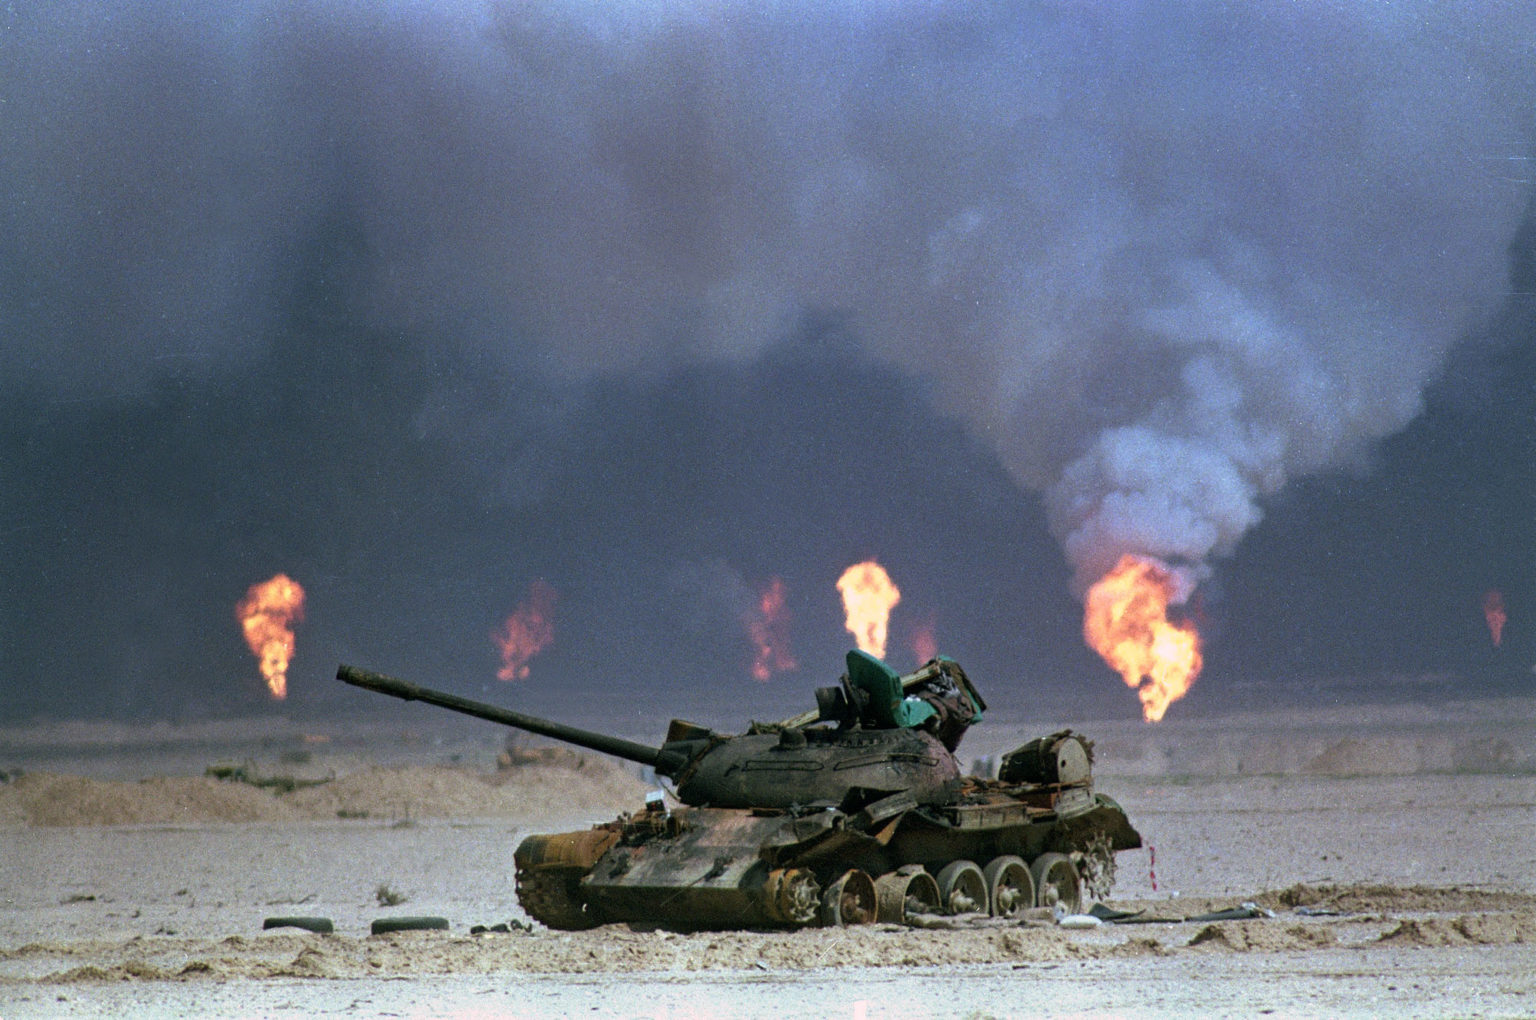 عملیات طوفان صحرا ، که به عنوان اولین جنگ خلیج فارس شناخته می شود ...